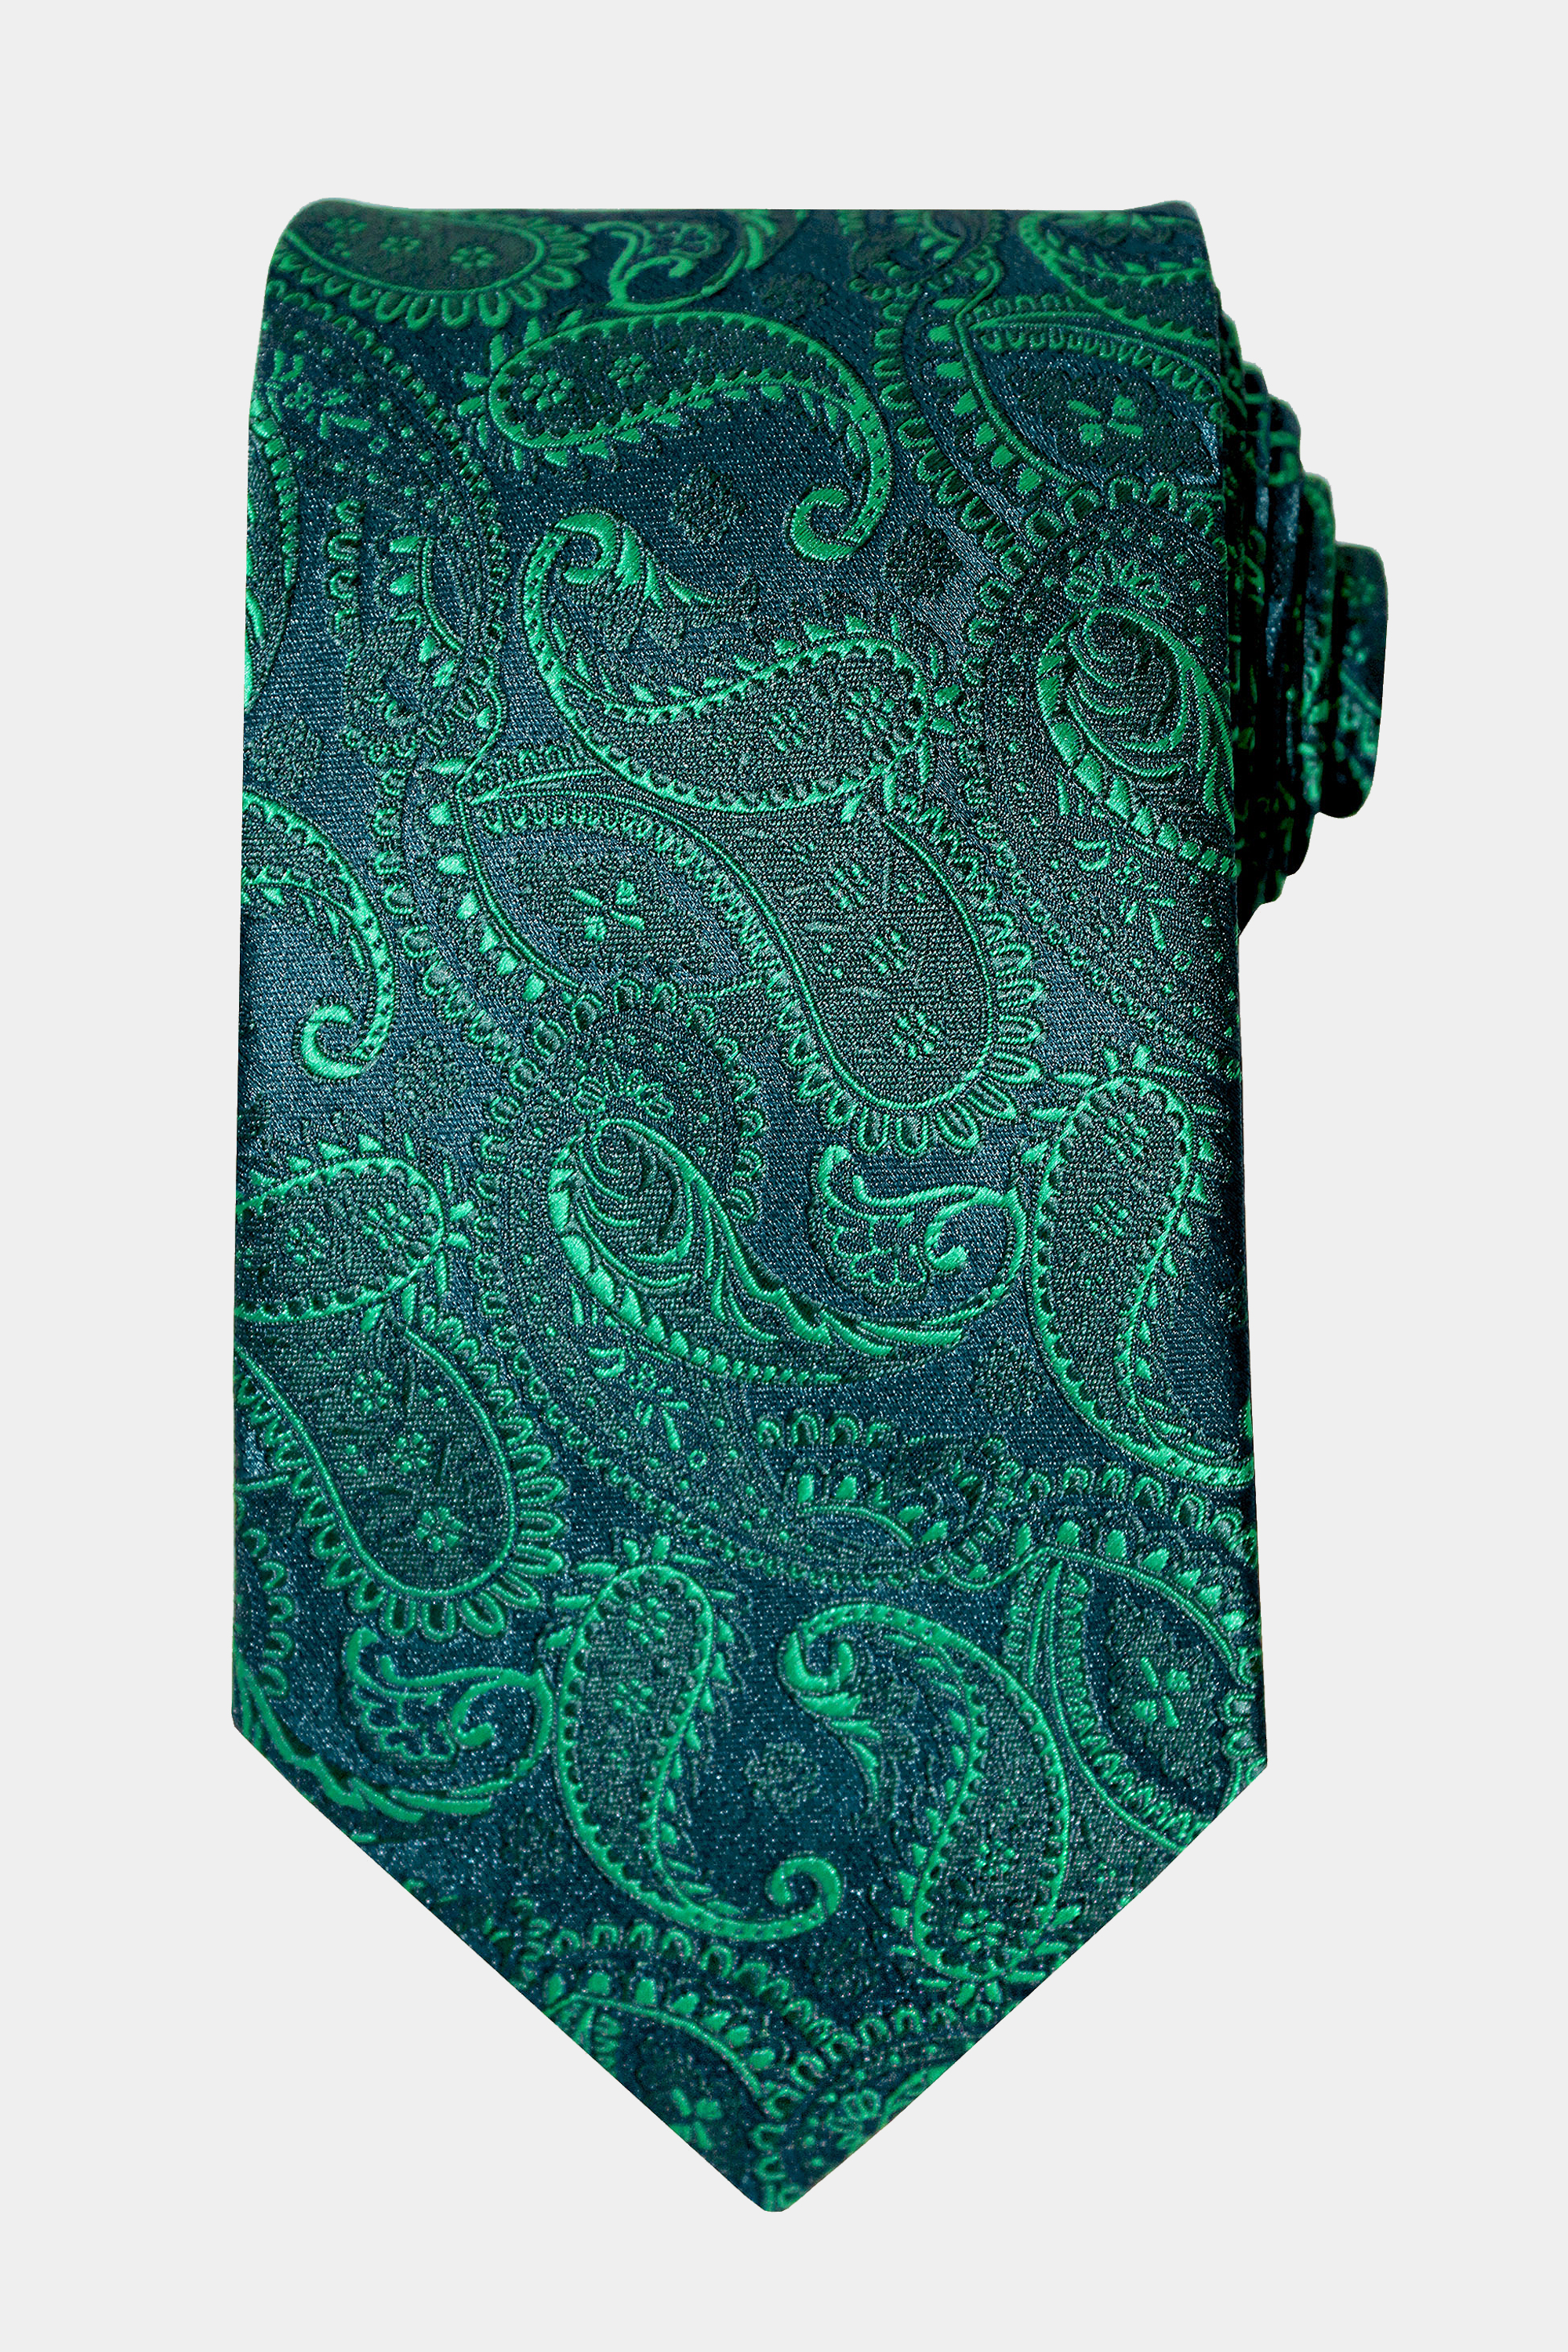 Emerald-Green-Paisley-Tie-from-Gentlemansguru.com_